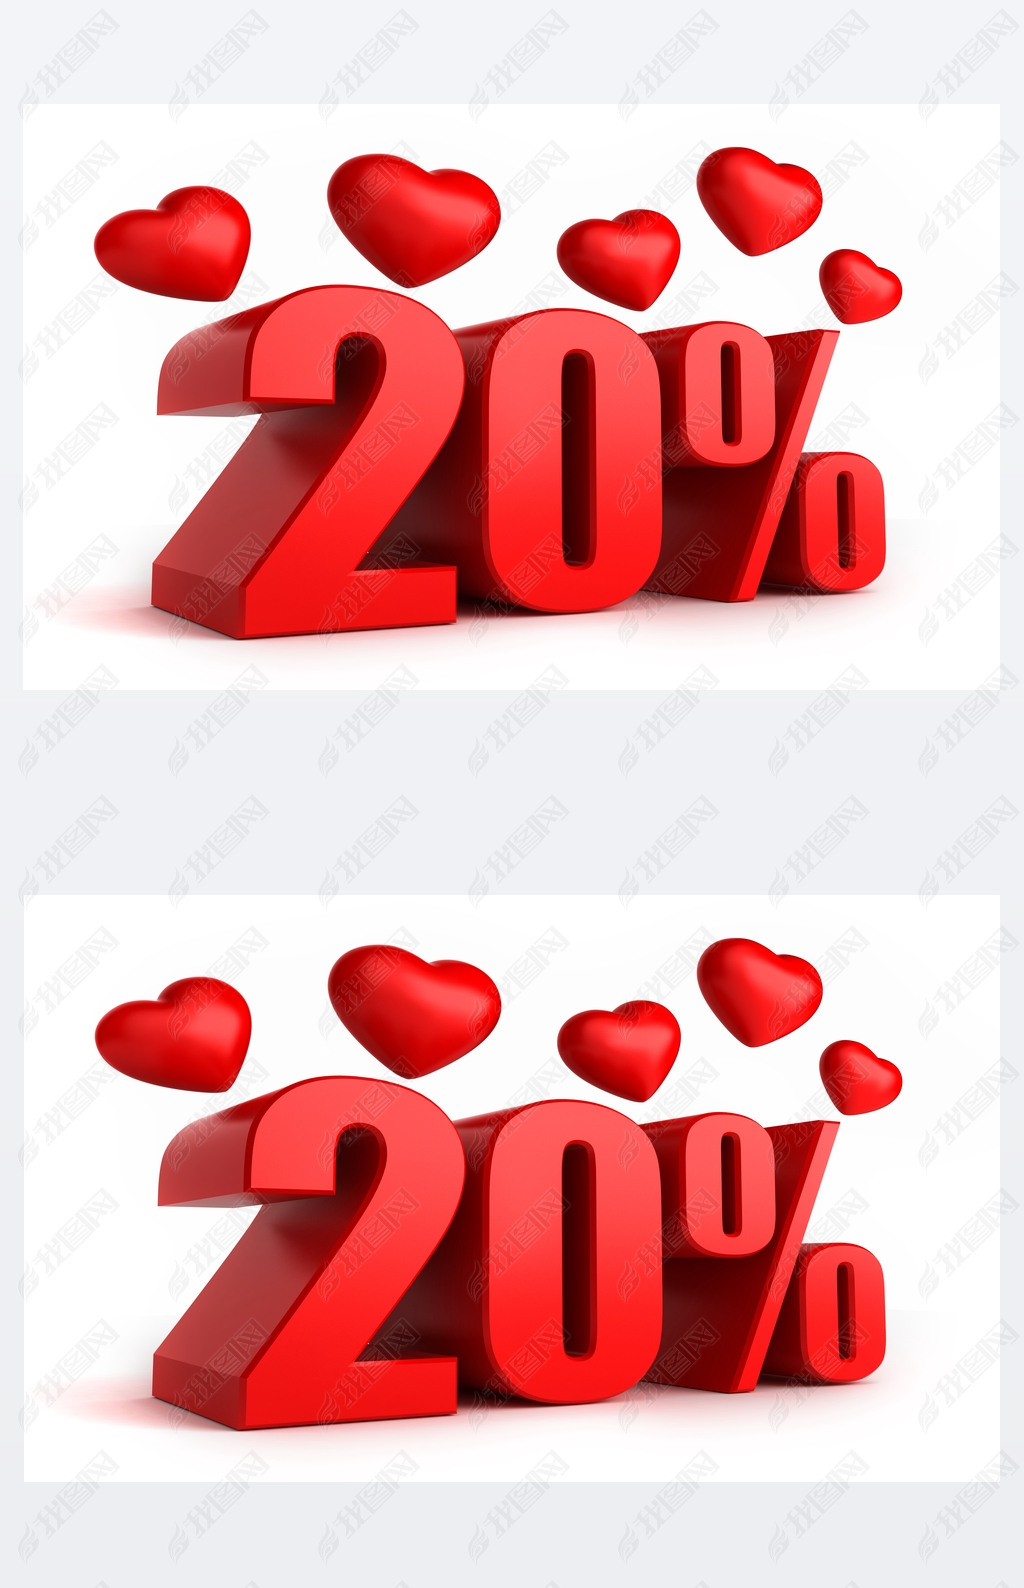  20%